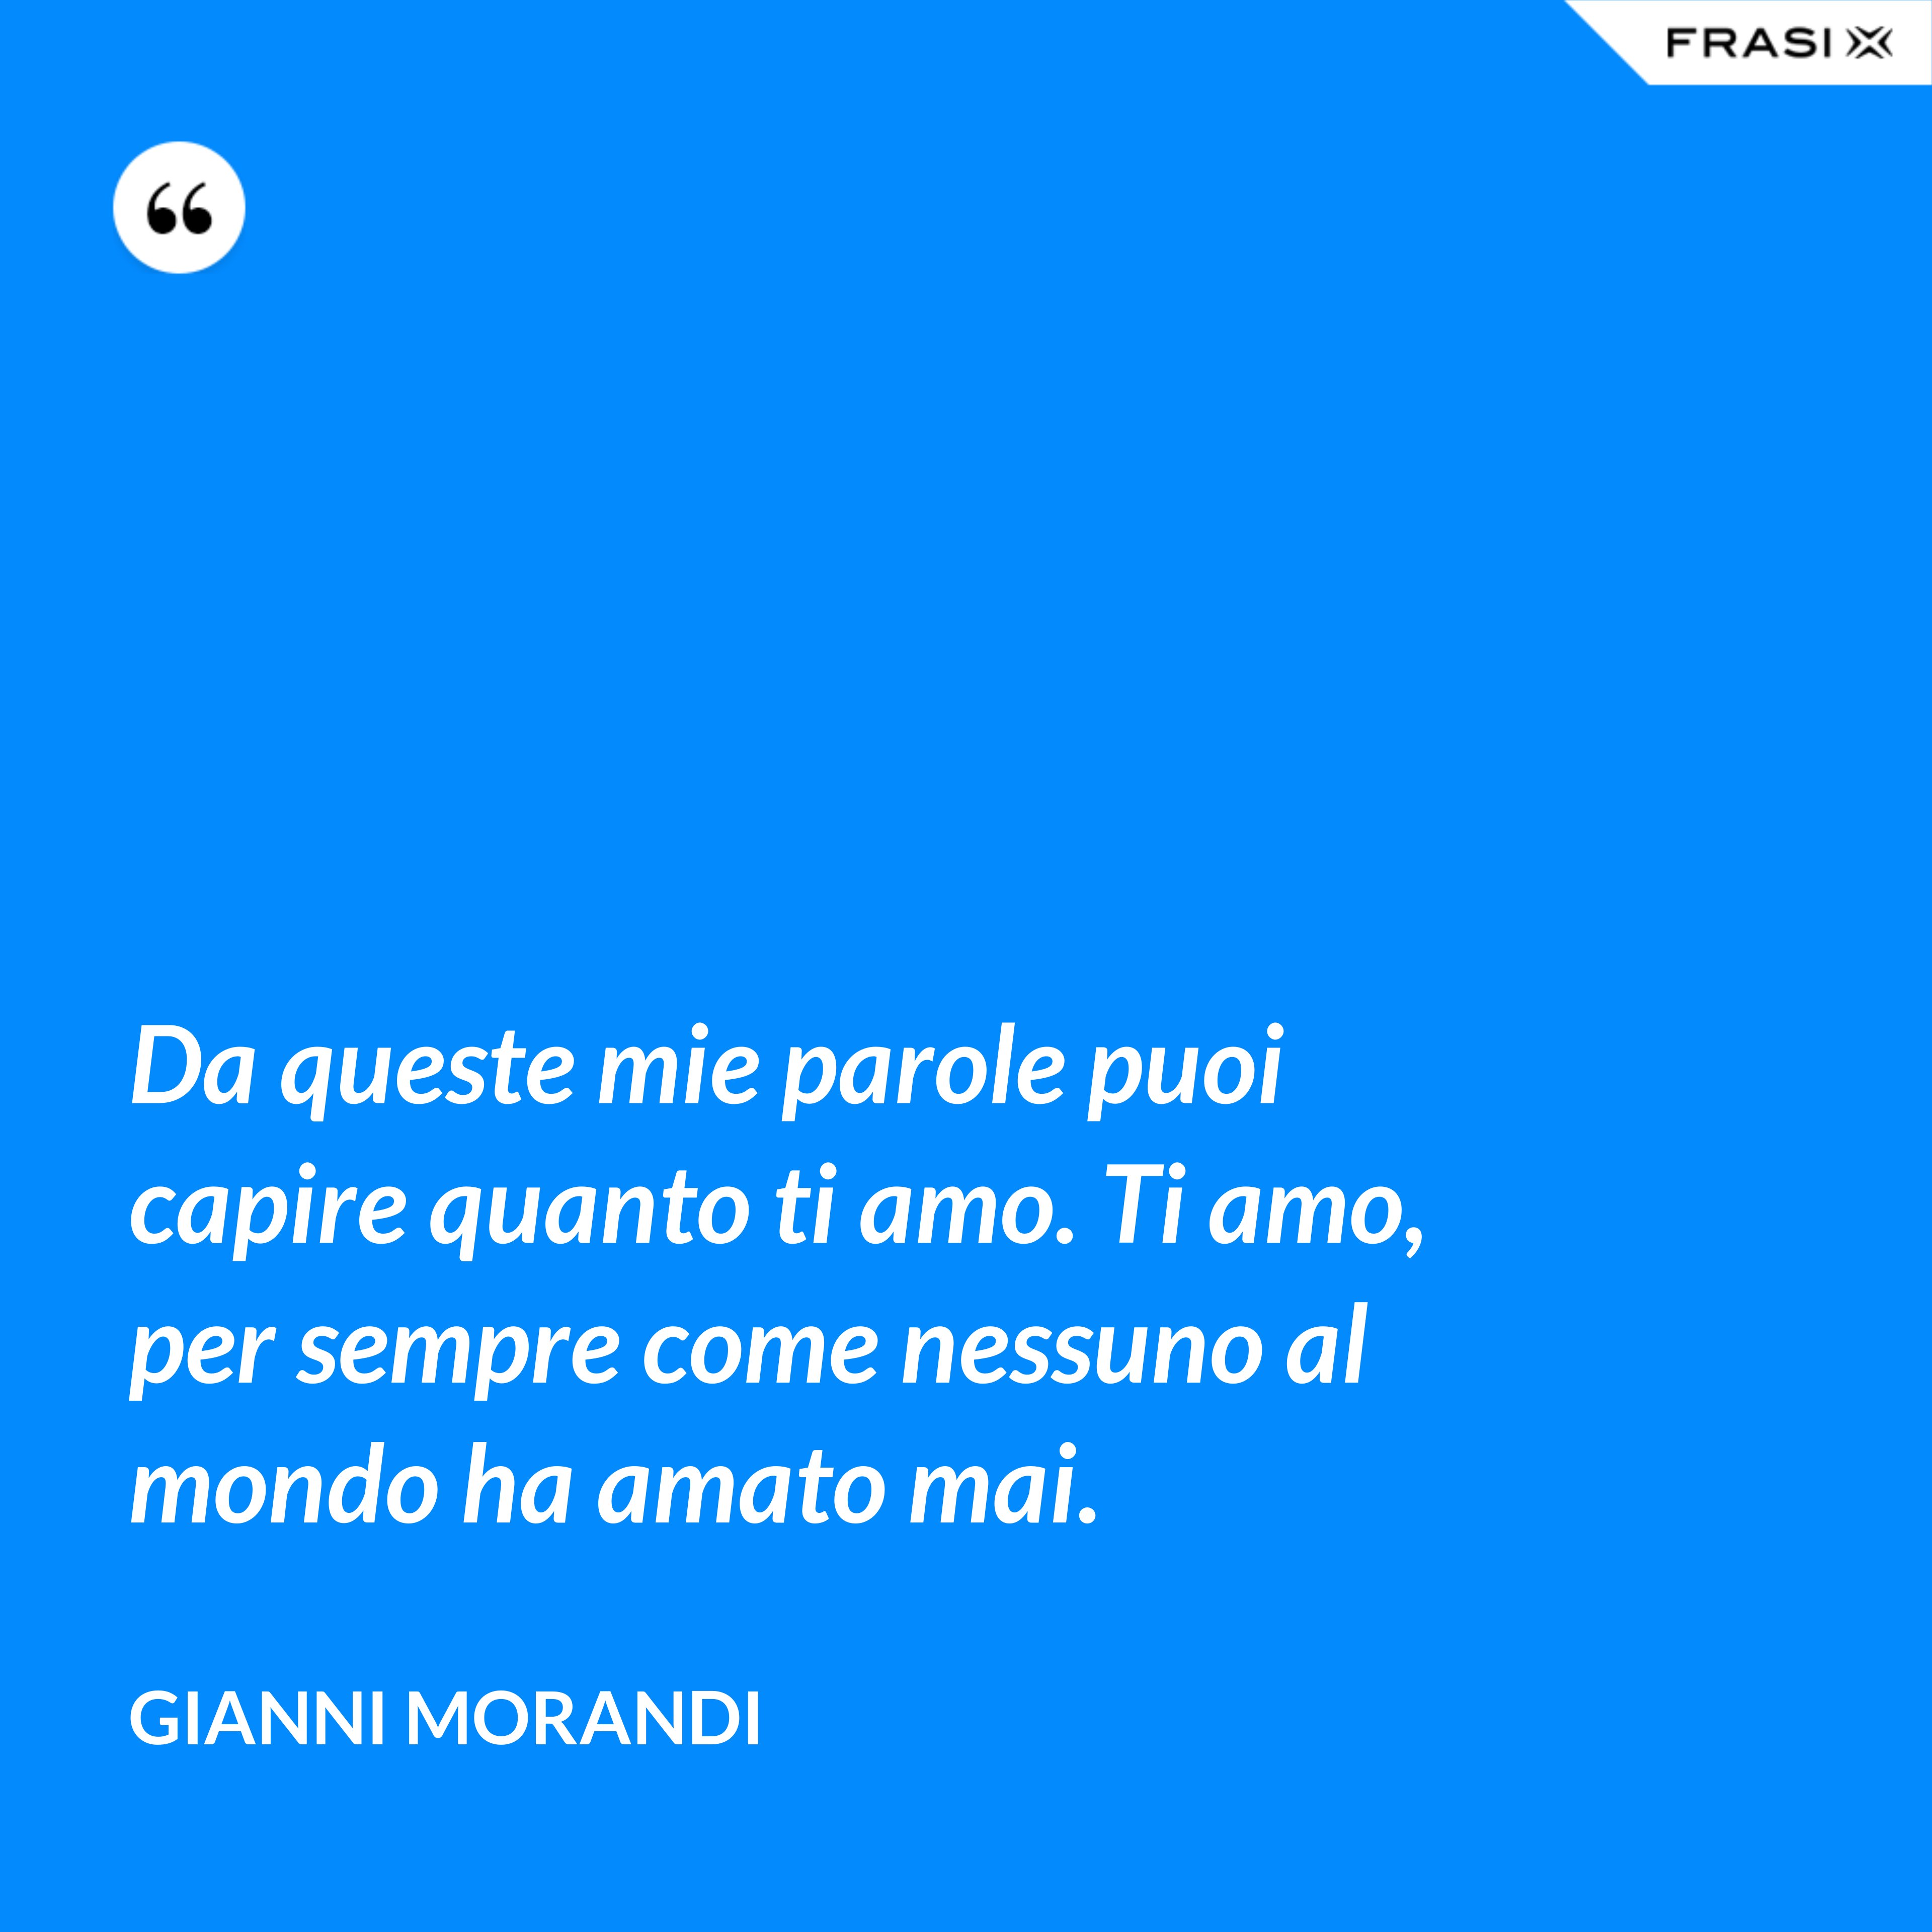 Da queste mie parole puoi capire quanto ti amo. Ti amo, per sempre come nessuno al mondo ha amato mai. - Gianni Morandi